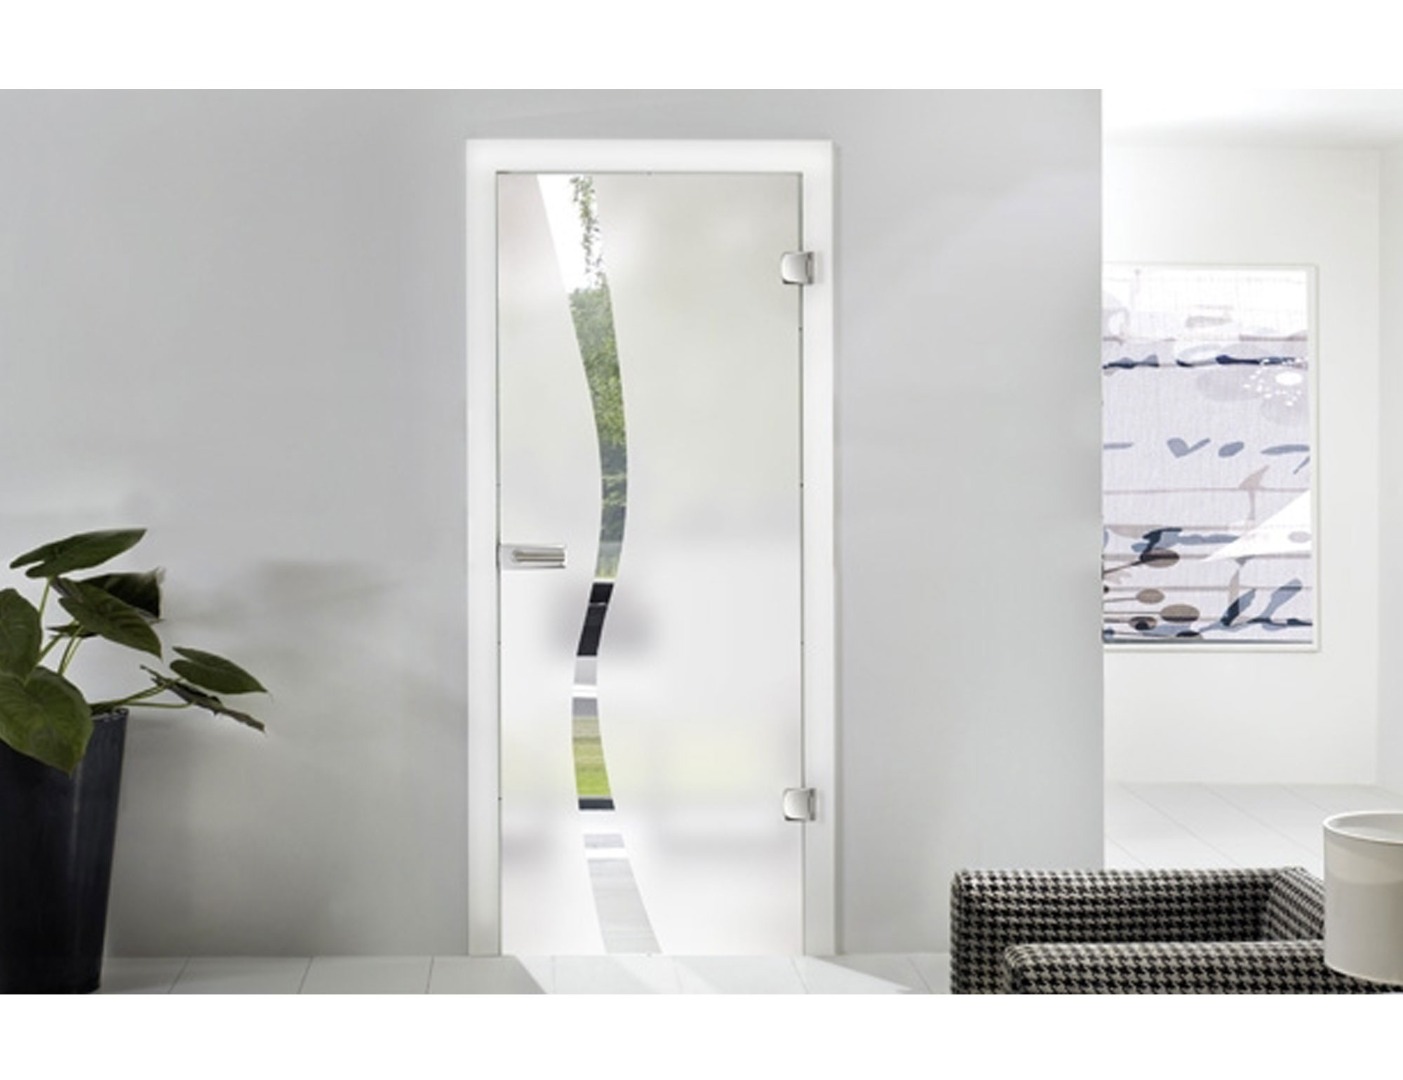 Wave Type 8 Glass Door Design - Room Dividers Design